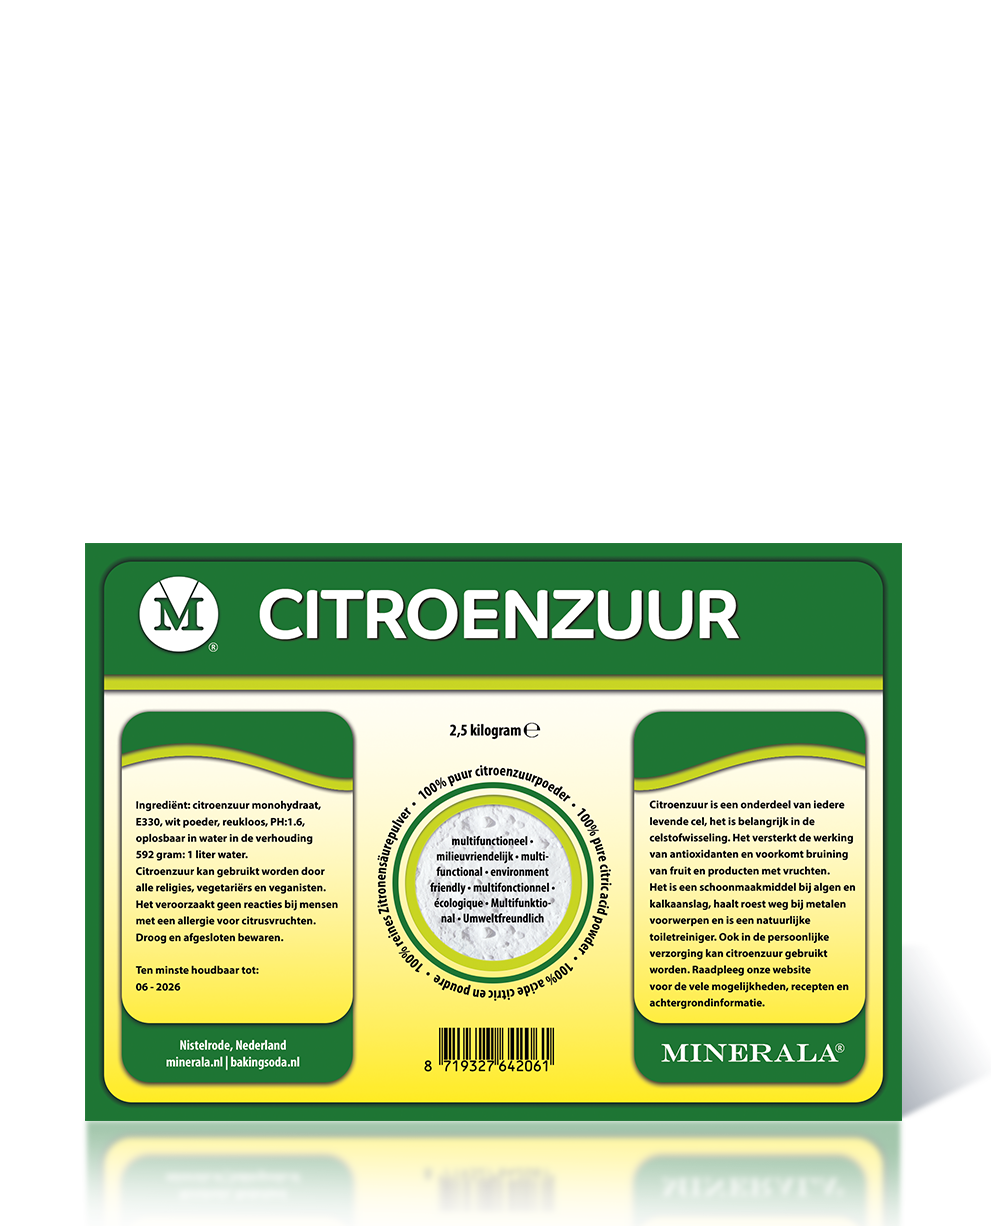 Minerala Basics - Citroenzuur - Baking Soda NL, Nistelrode